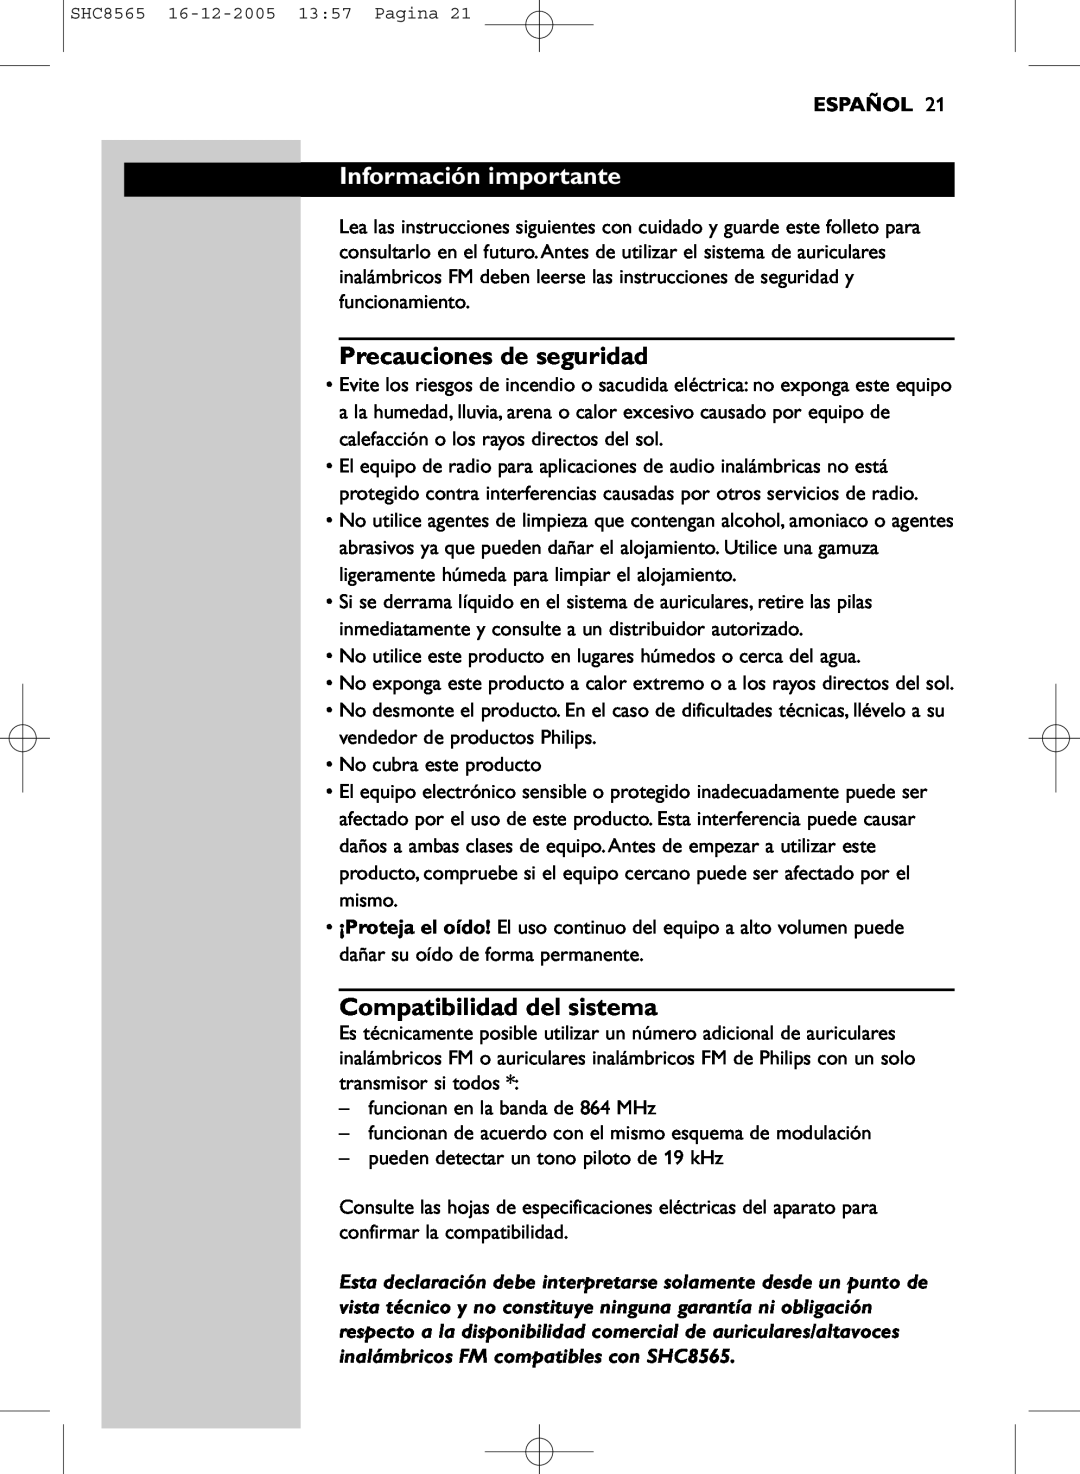 Philips SHC8565 manual Información importante, Precauciones de seguridad, Compatibilidad del sistema, Español 